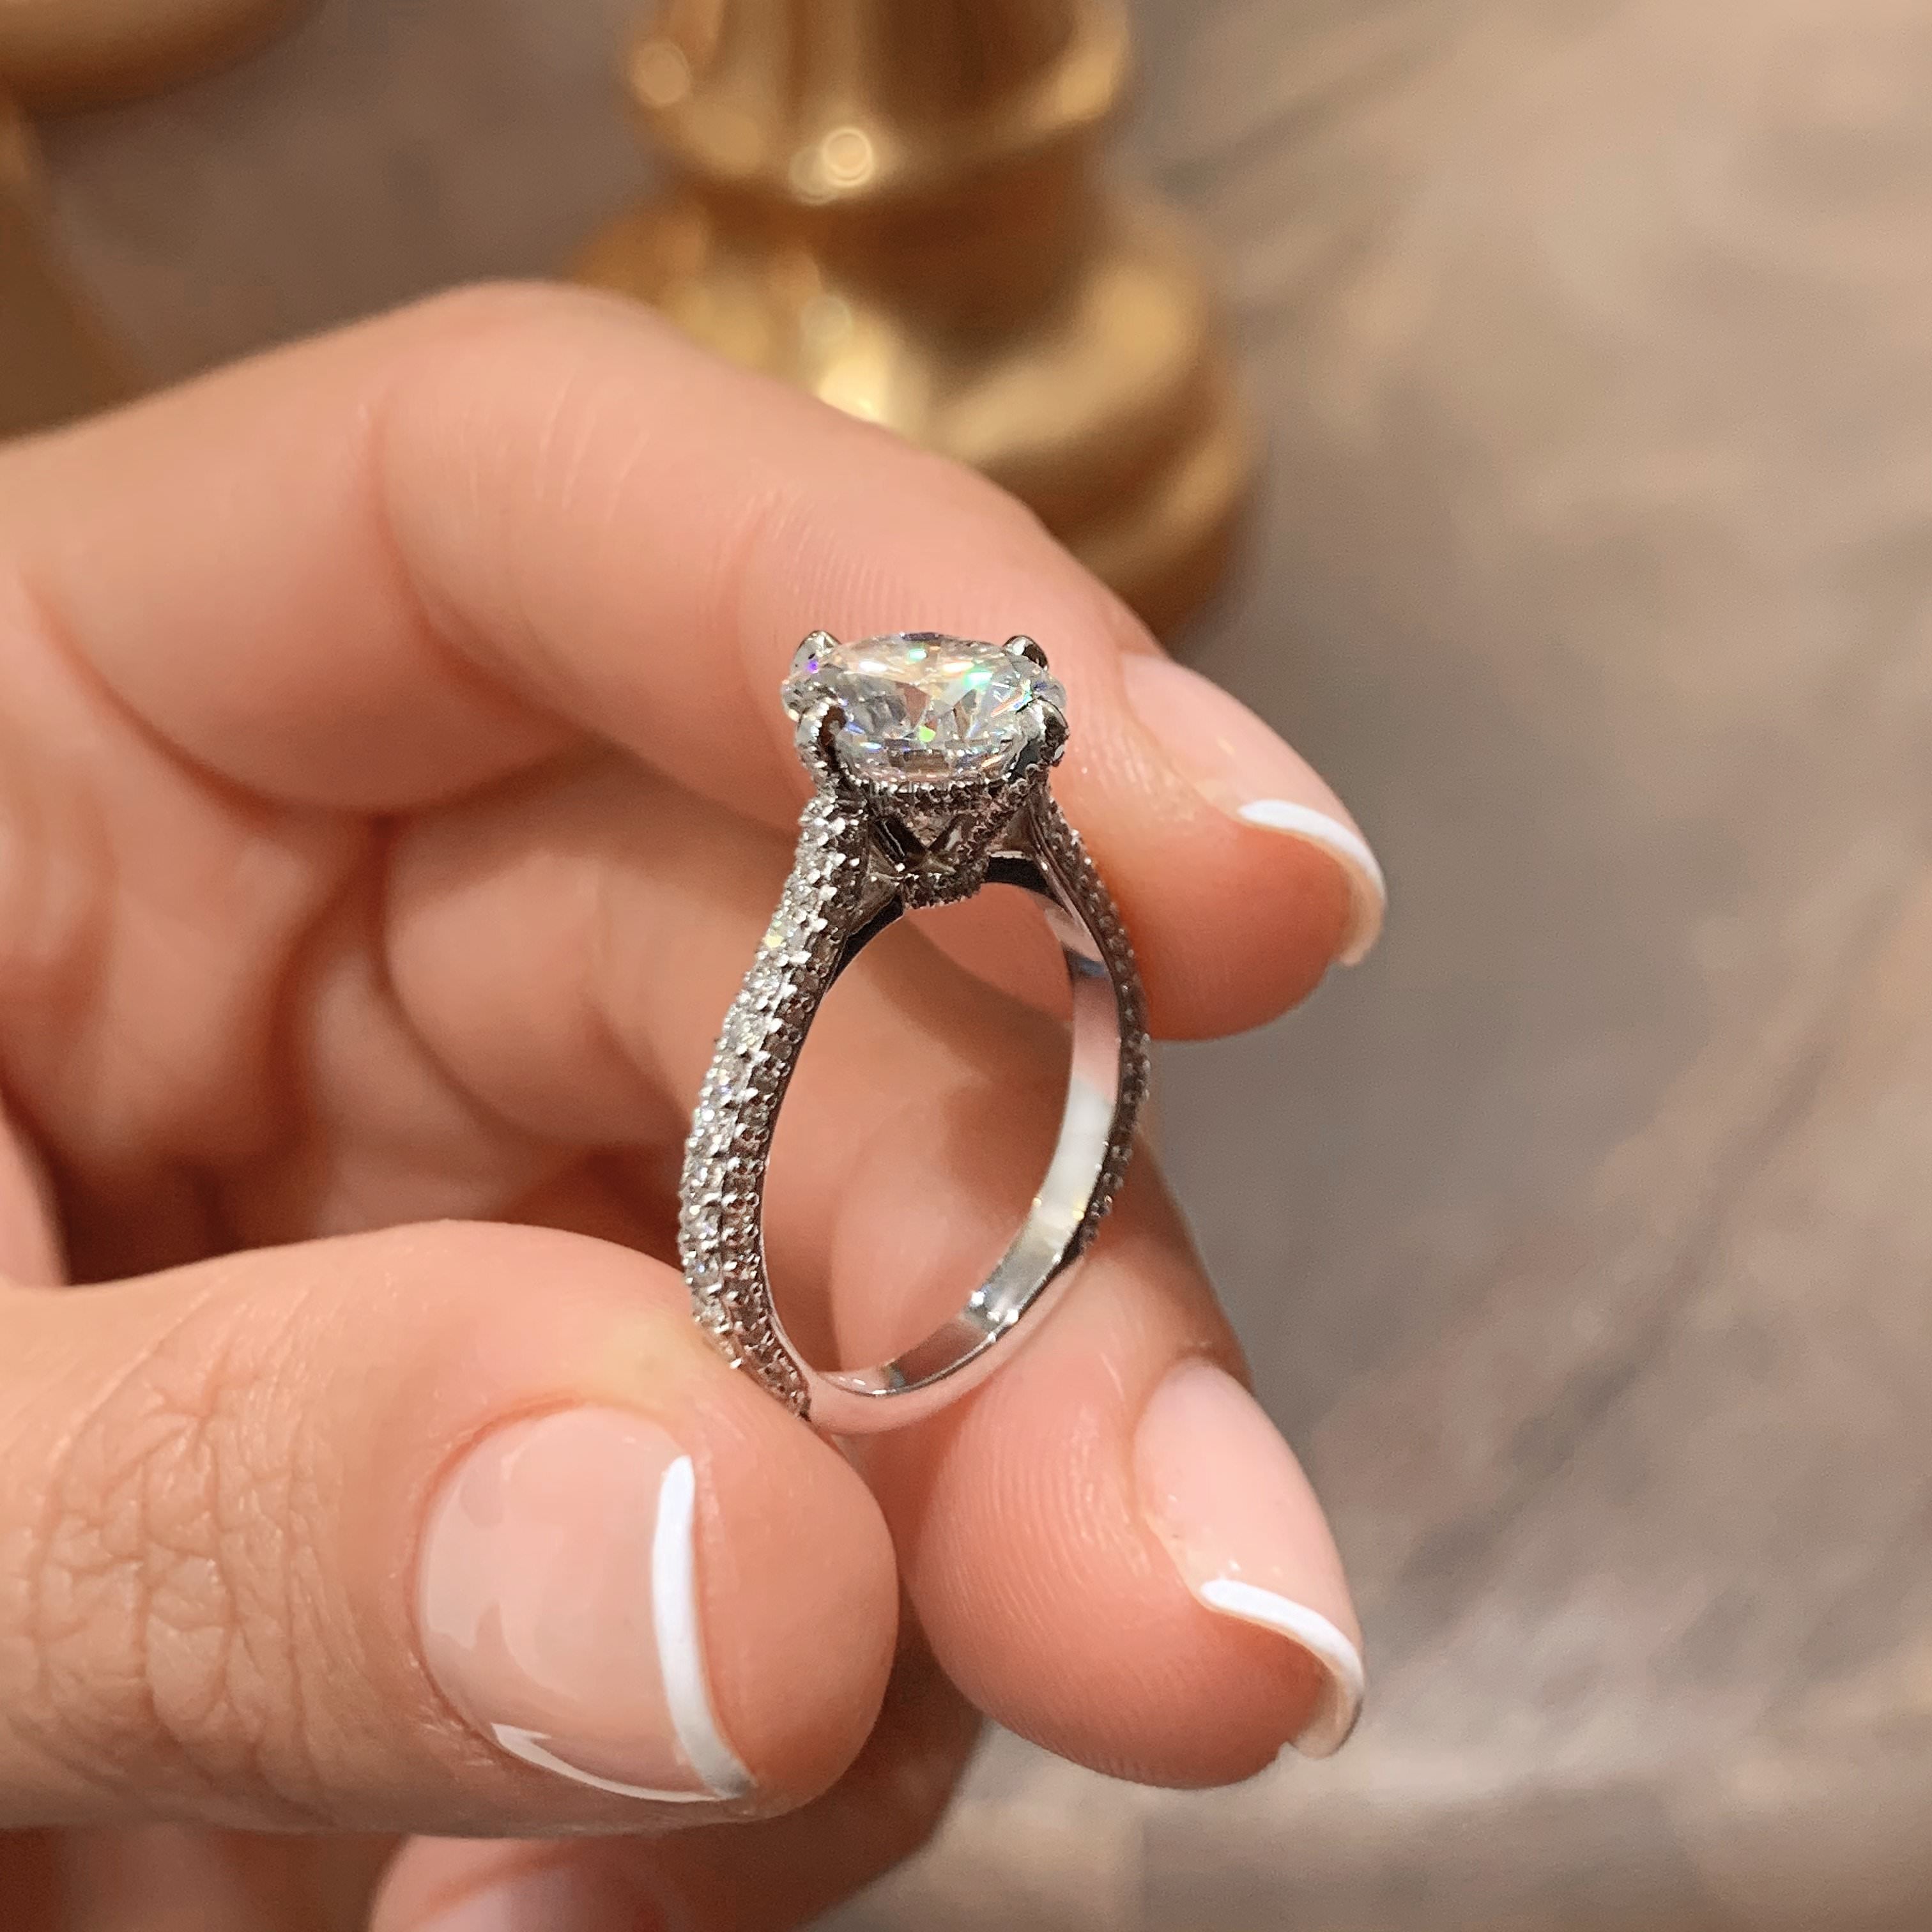 Jocelyn Moissanite & Diamonds Ring   (2.5 Carat) -18K White Gold